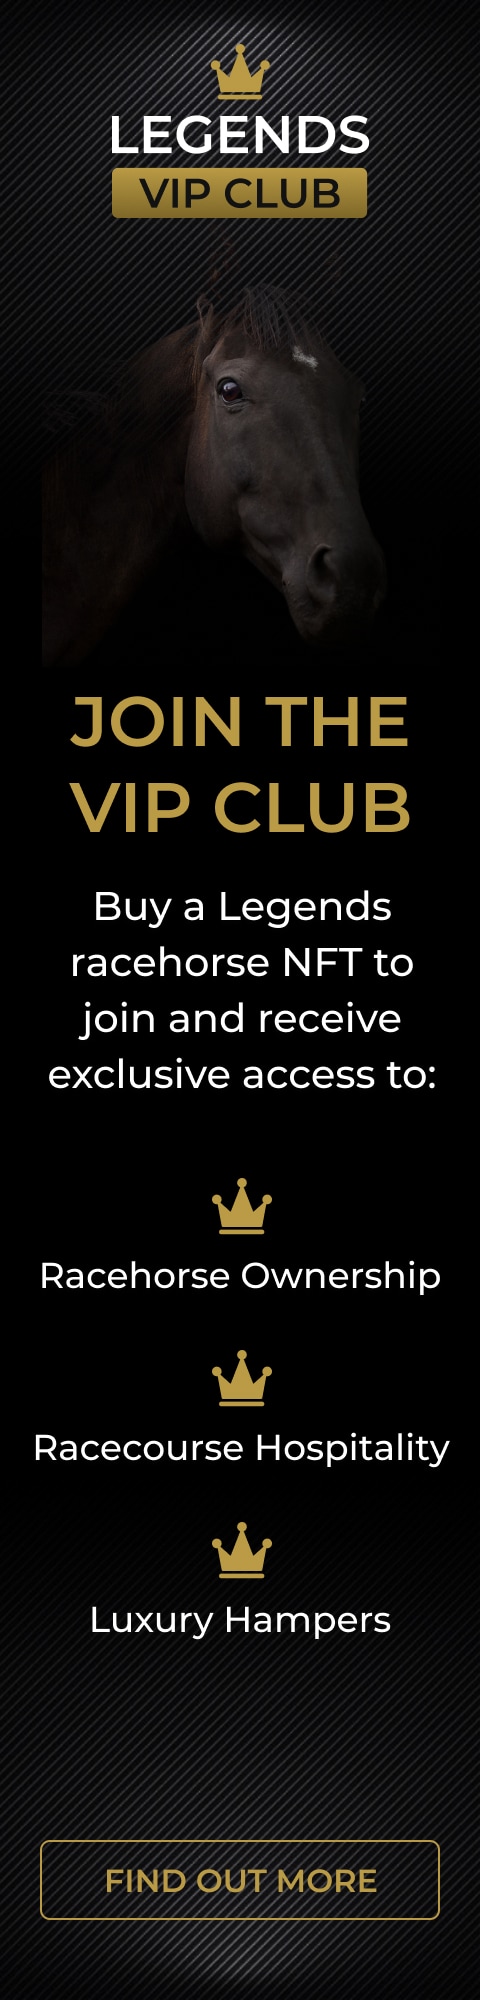 Racing Factors Legends VIP Club